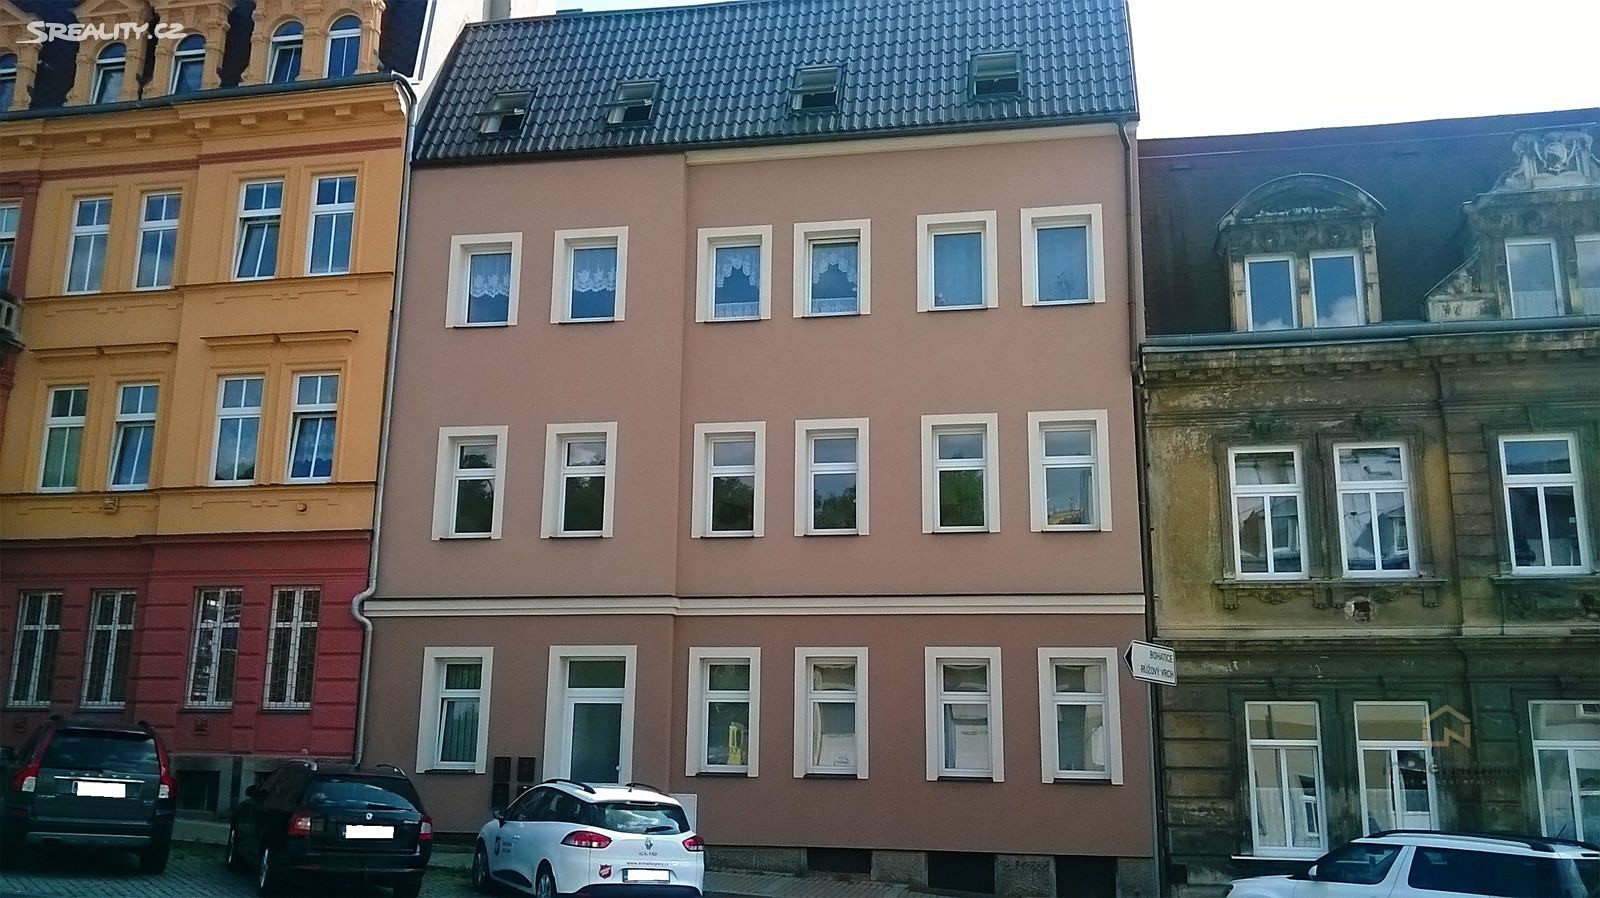 Pronájem bytu 3+kk 60 m², Nákladní, Karlovy Vary - Rybáře